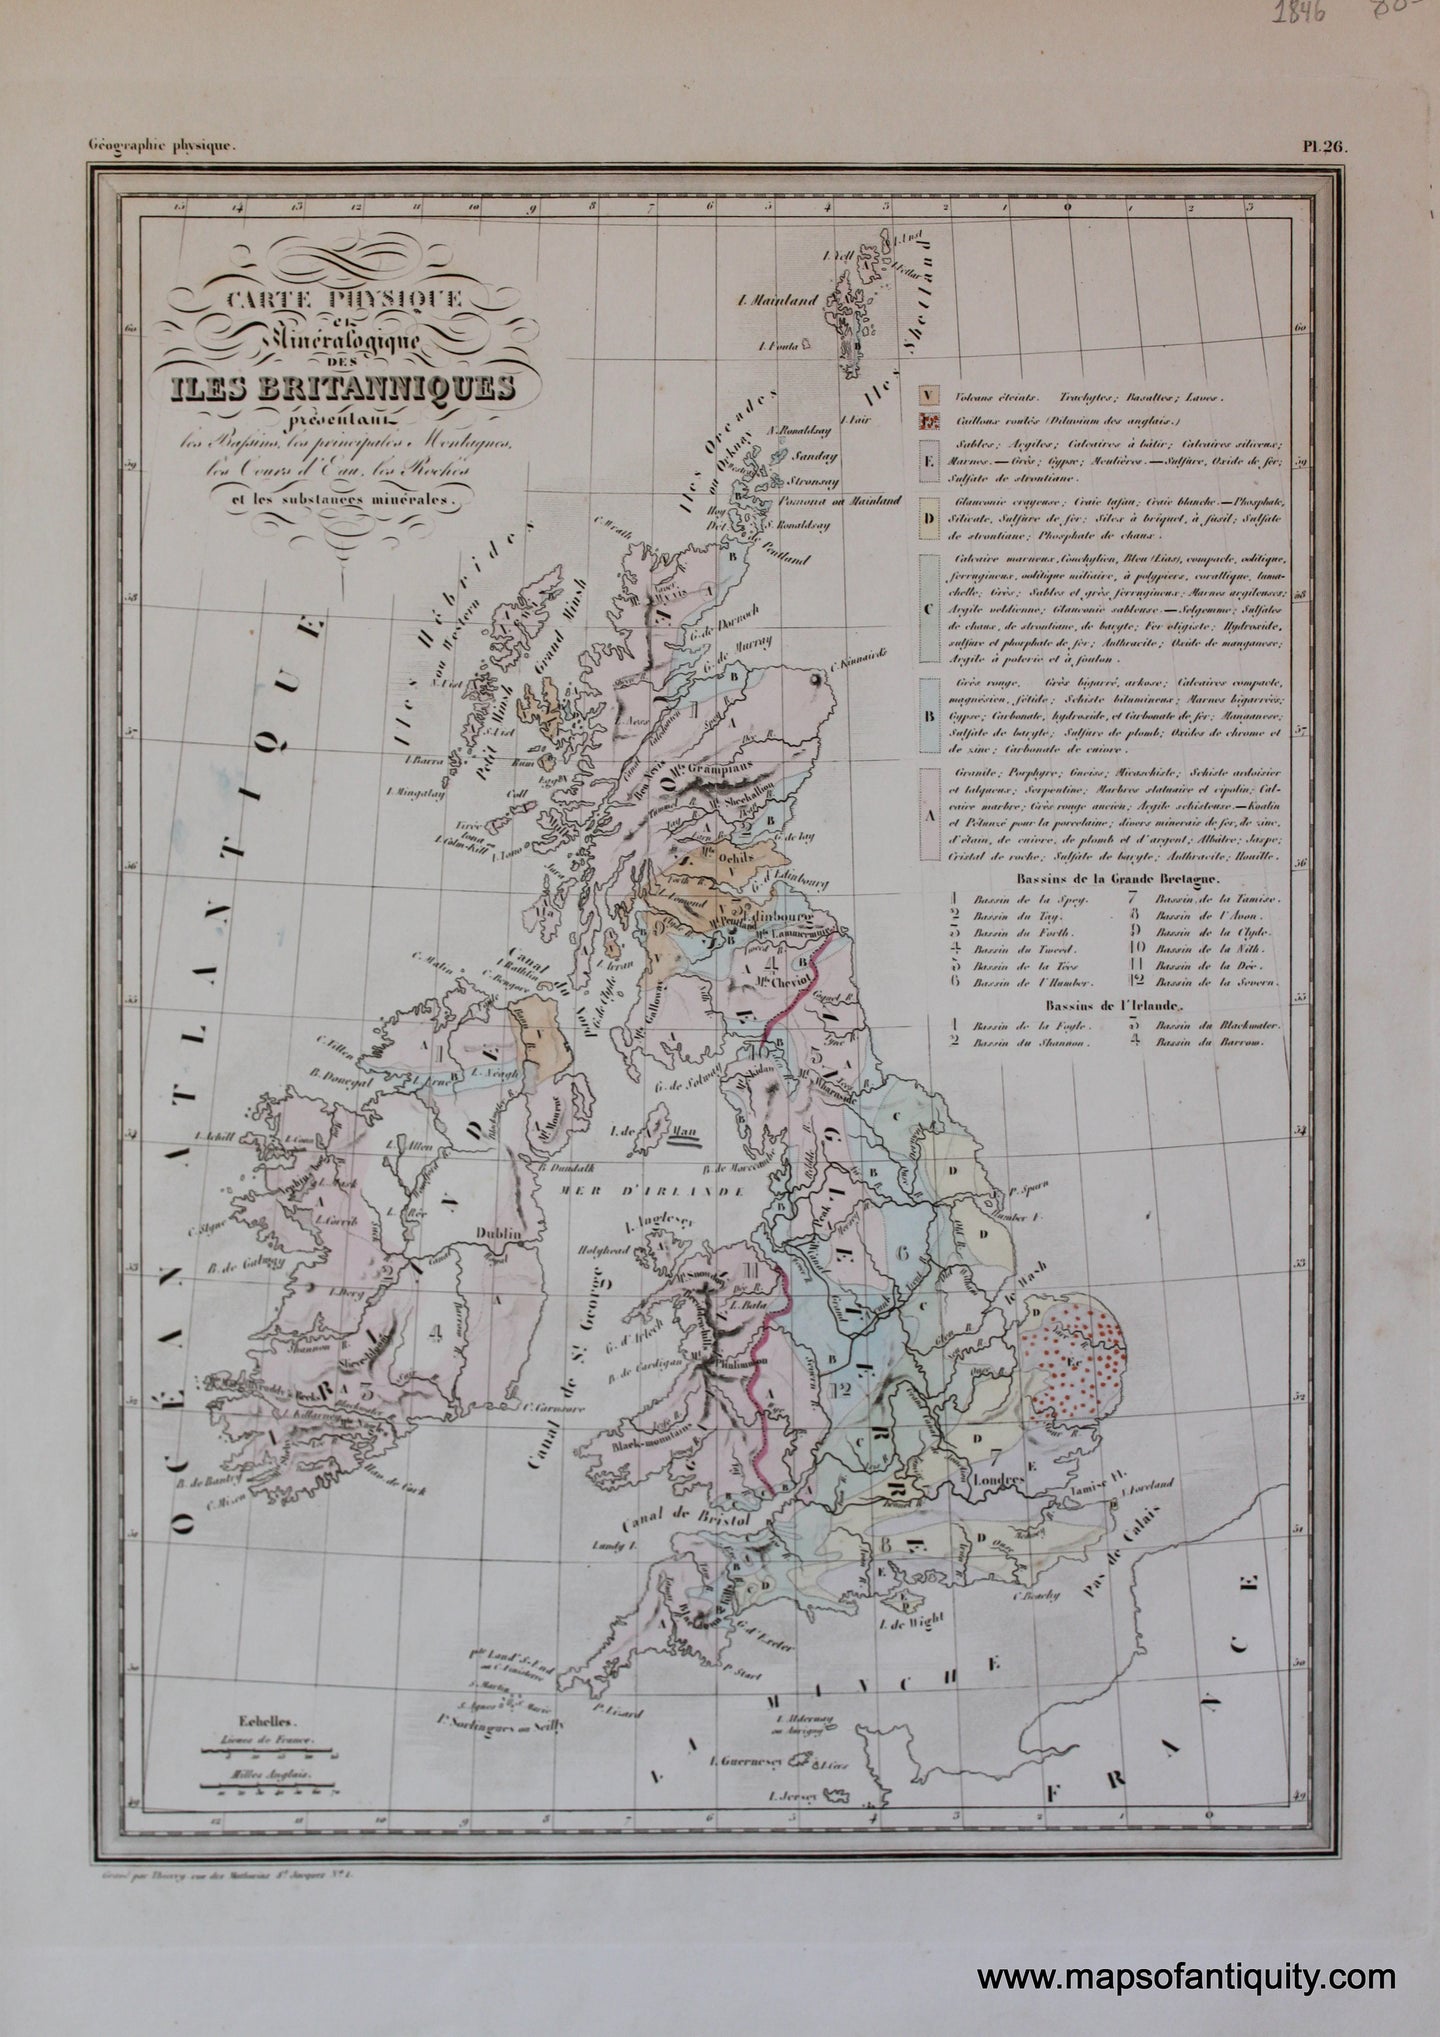 Antique-Hand-Colored-Map-Carte-Physique-et-Mineralogique-des-Iles-Britanniques-Europe-Europe-General-1846-M.-Malte-Brun-Maps-Of-Antiquity